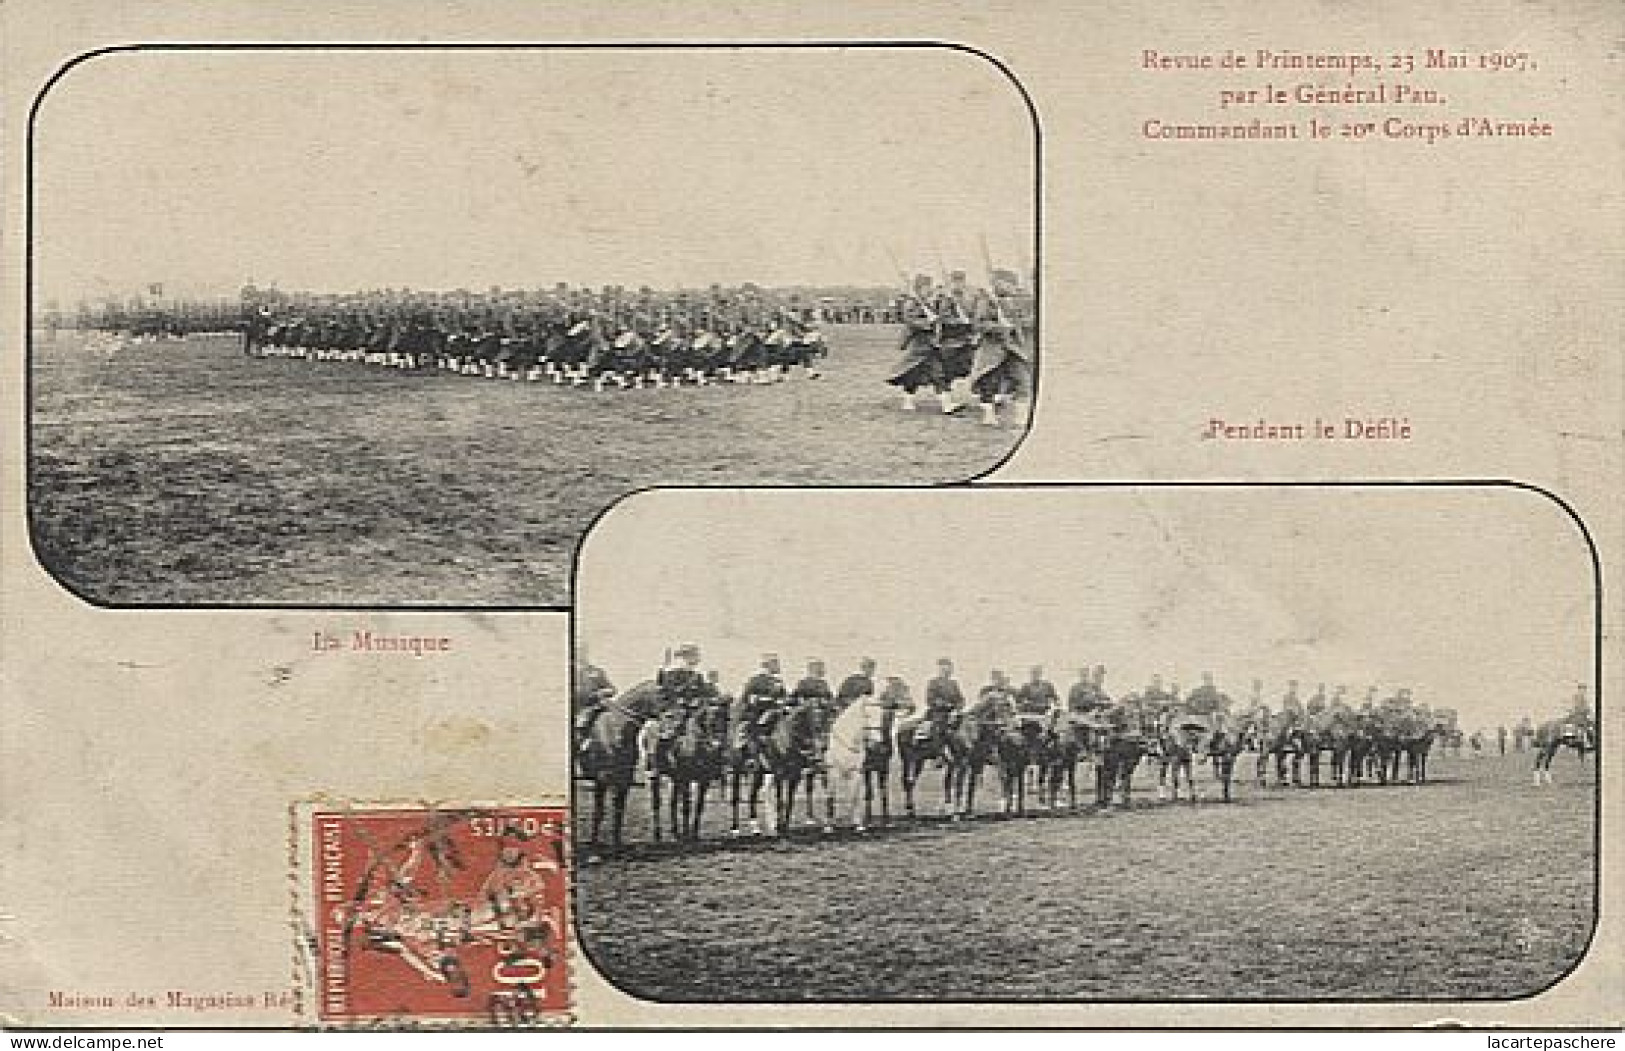 X124117 REVUE DE PRINTEMPS 23 MAI 1907 PAR GENERAL PAU COMMANDANT 20° CORPS D' ARMEE LA MUSIQUE ET PENDANT DEFILE - Manovre